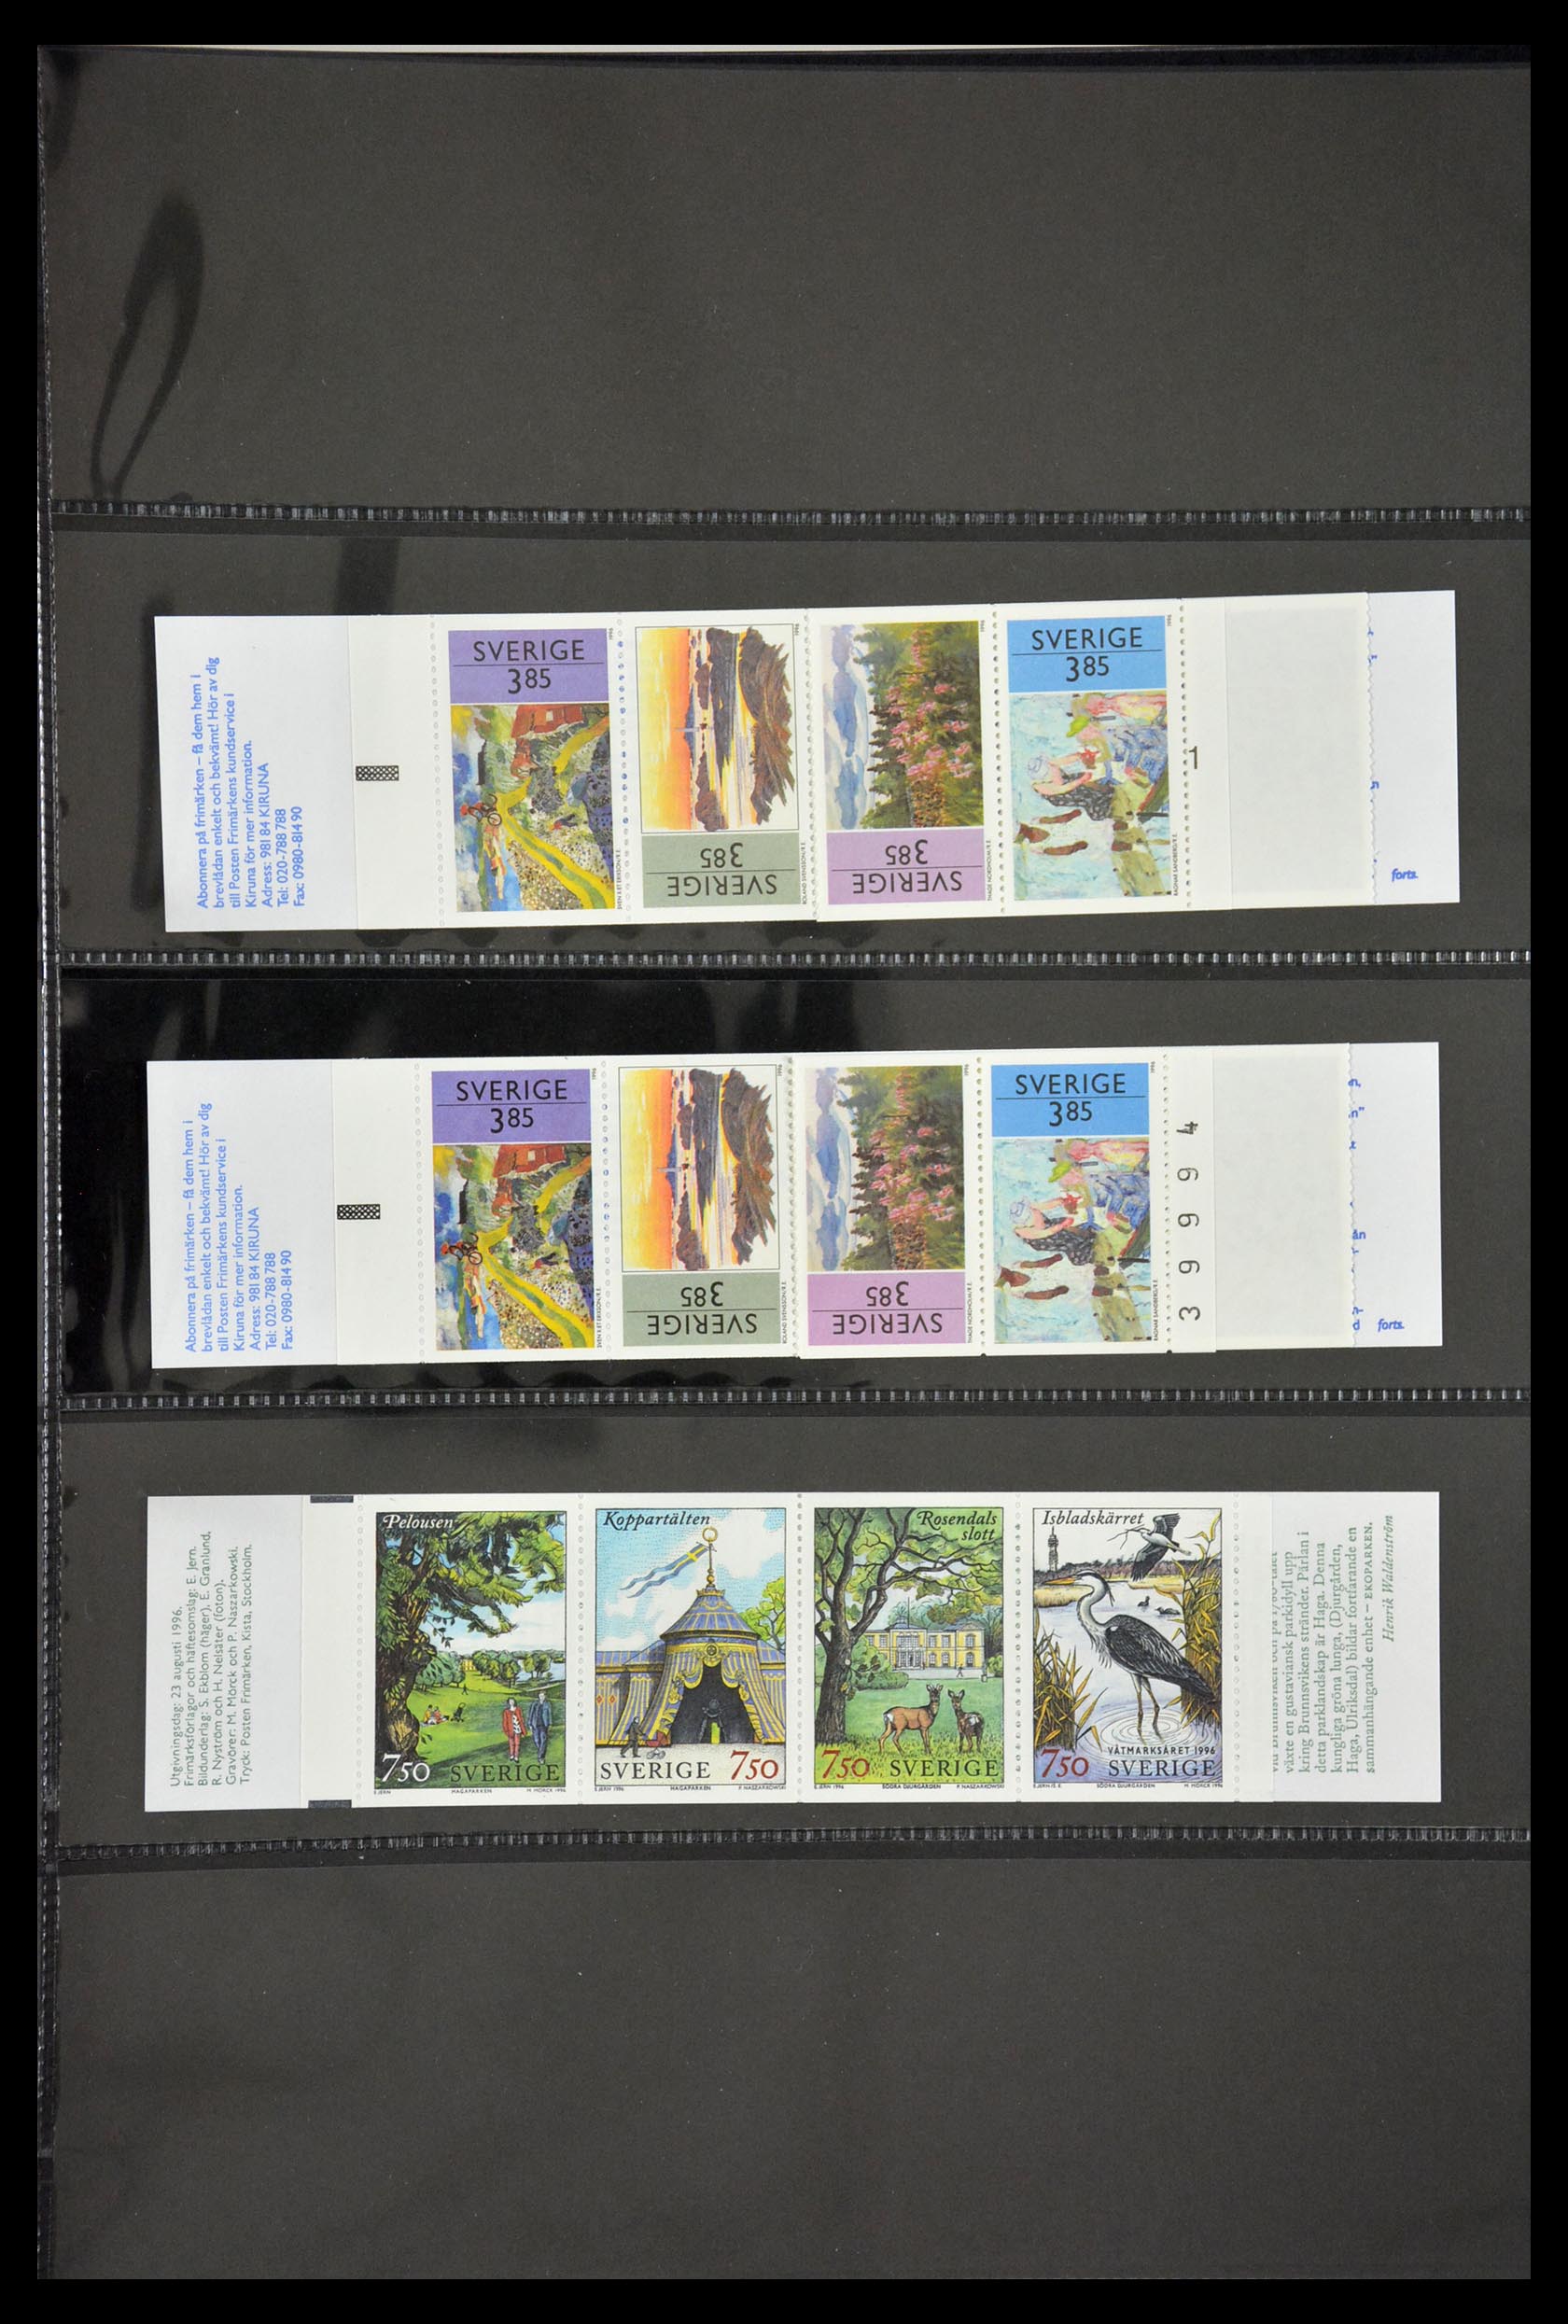 29368 103 - 29368 Sweden stamp booklets 1942-1996.